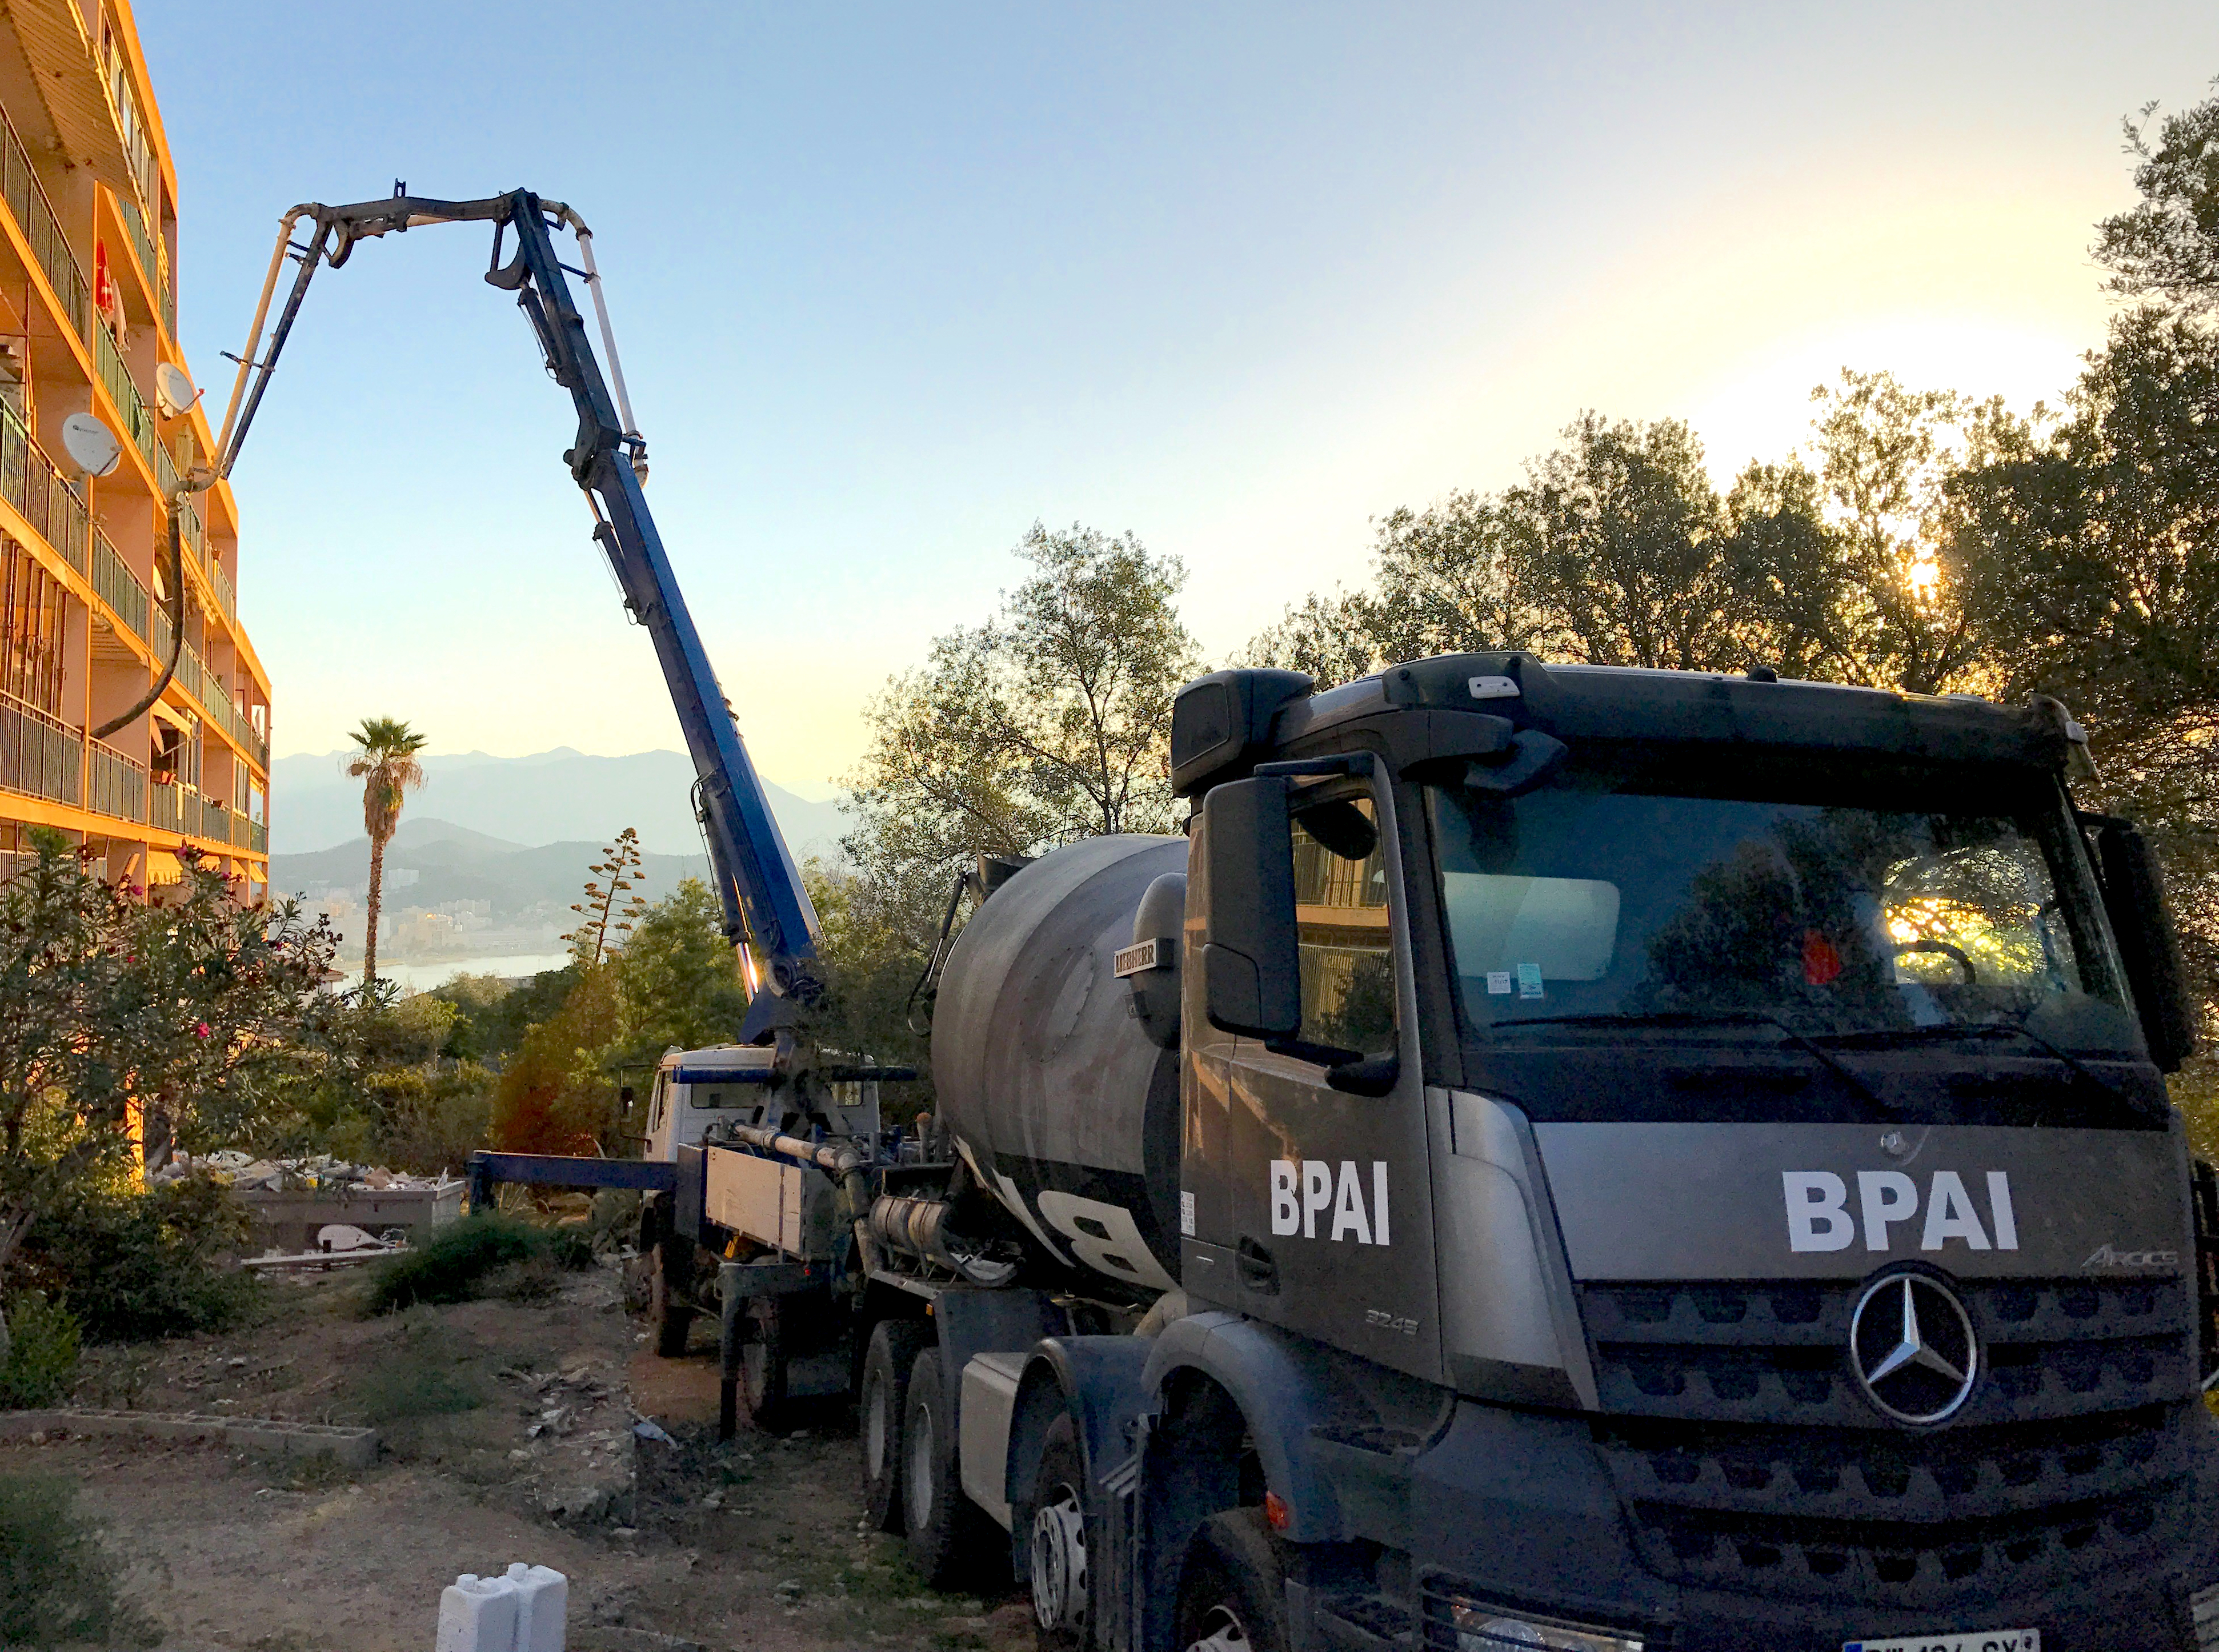 La pompe à béton est directement intégrée au camion pour couler du béton dans les endroits difficile d'accès BPAI spécialiste du béton prêt à l'emploi a Ajaccio